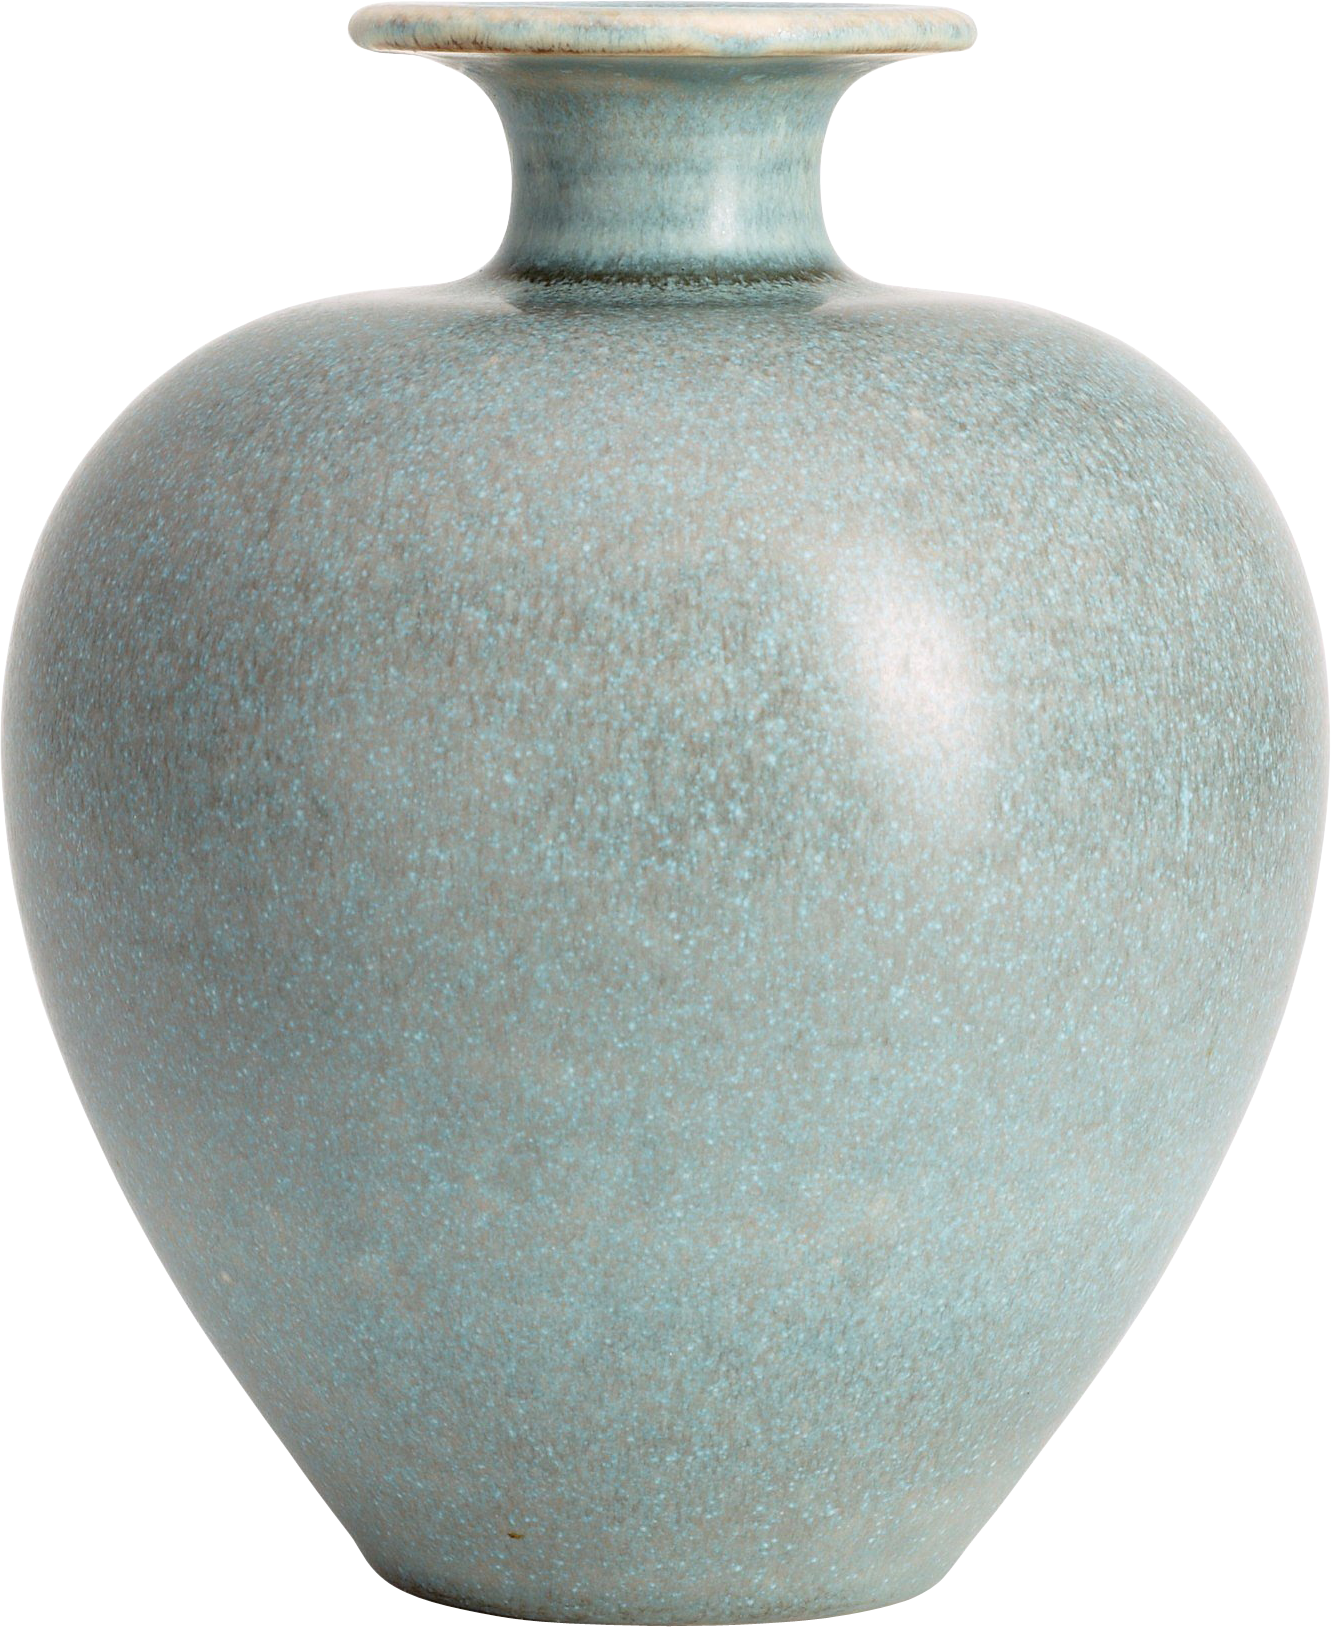 Imagem vazia do PNG do vaso com fundo transparente